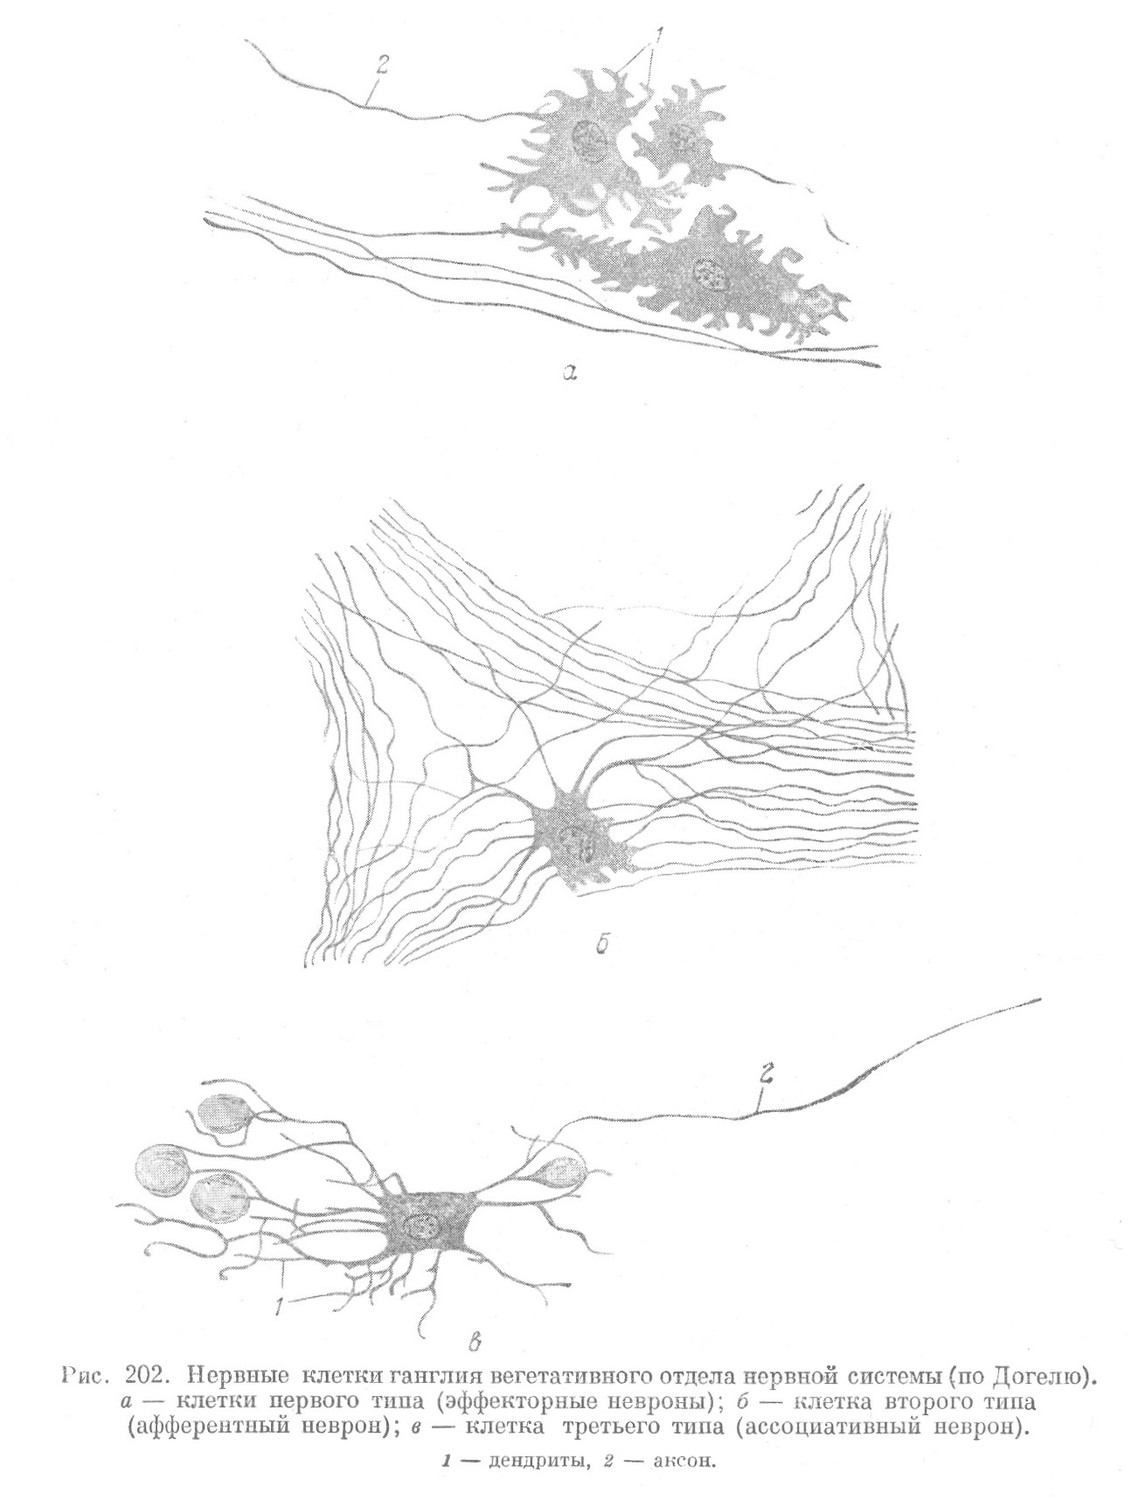 Нервные клетки ганглия вегетативного отдела нервной системы 